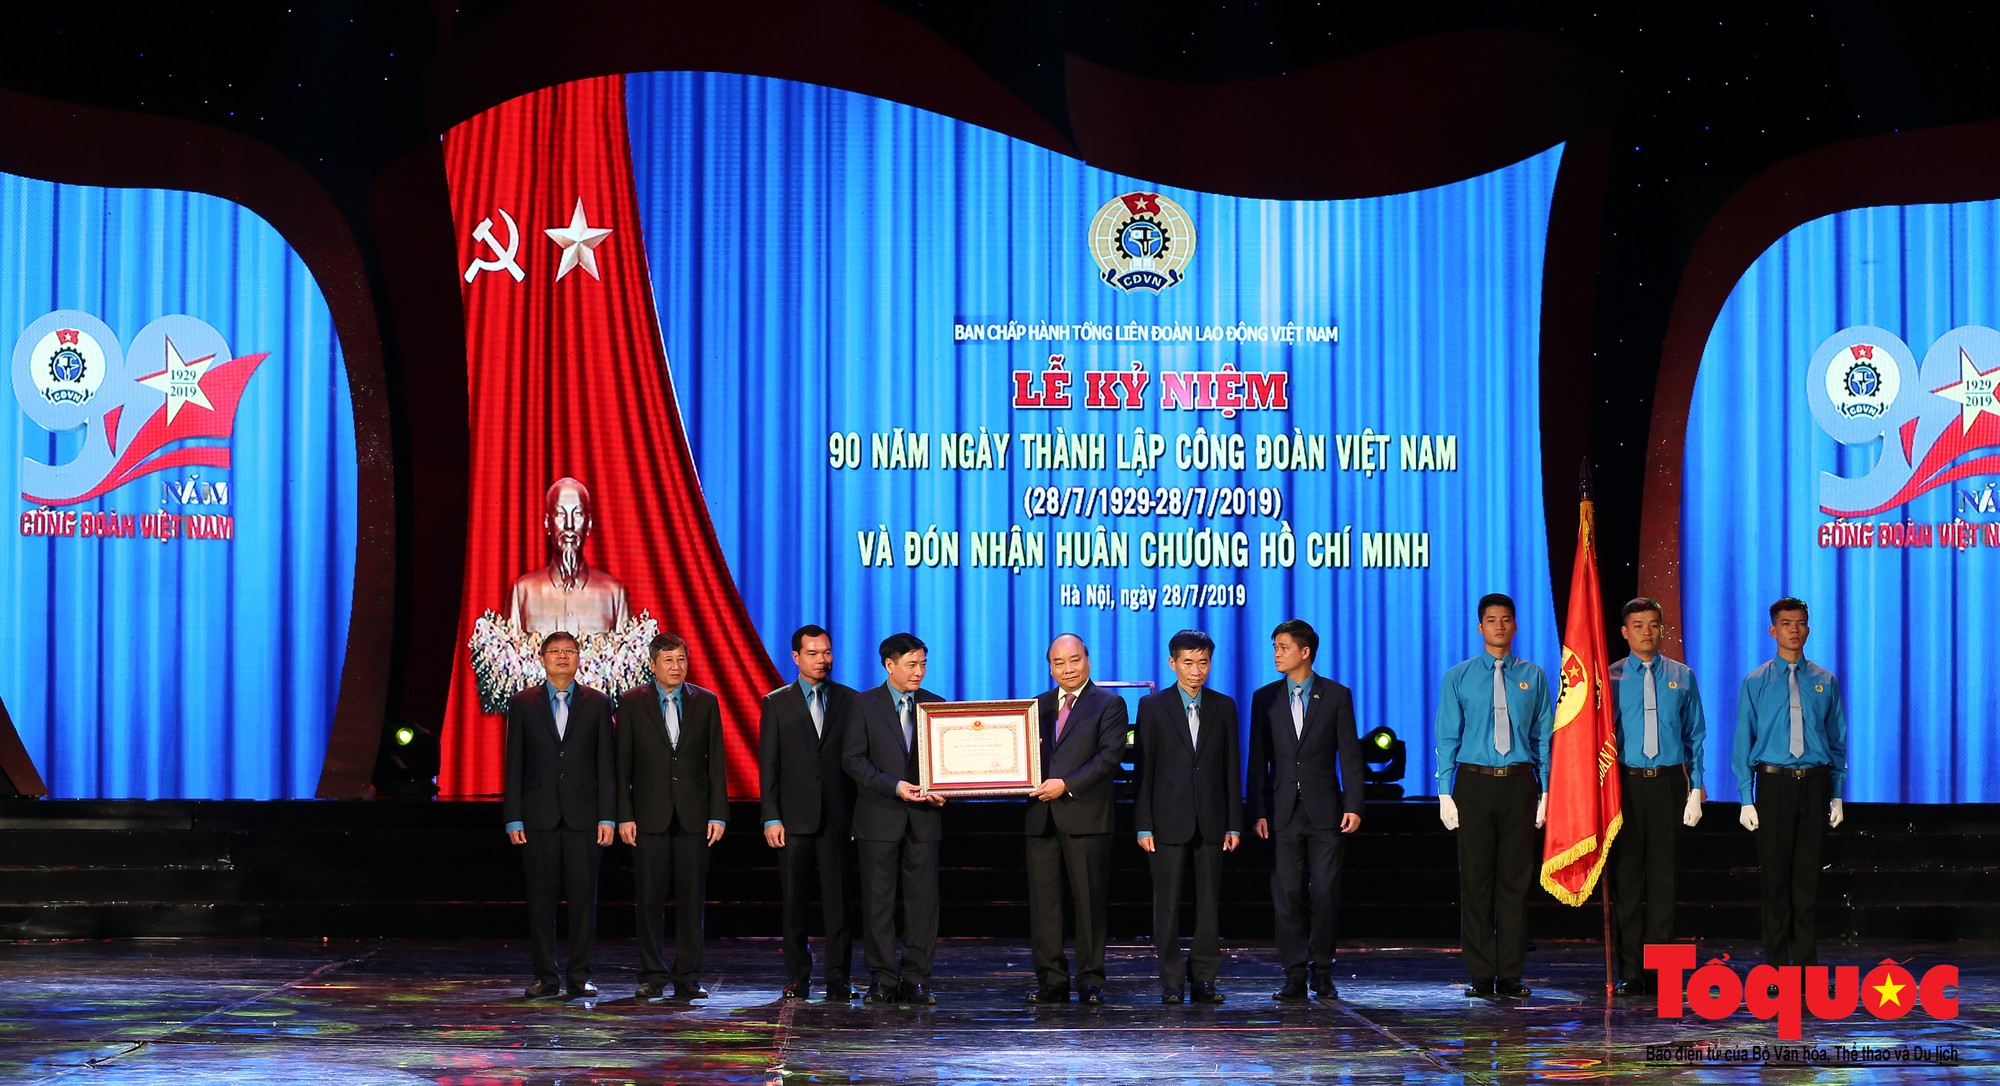 Long trọng Lễ kỷ niệm 90 năm Ngày thành lập Công đoàn Việt Nam (10)